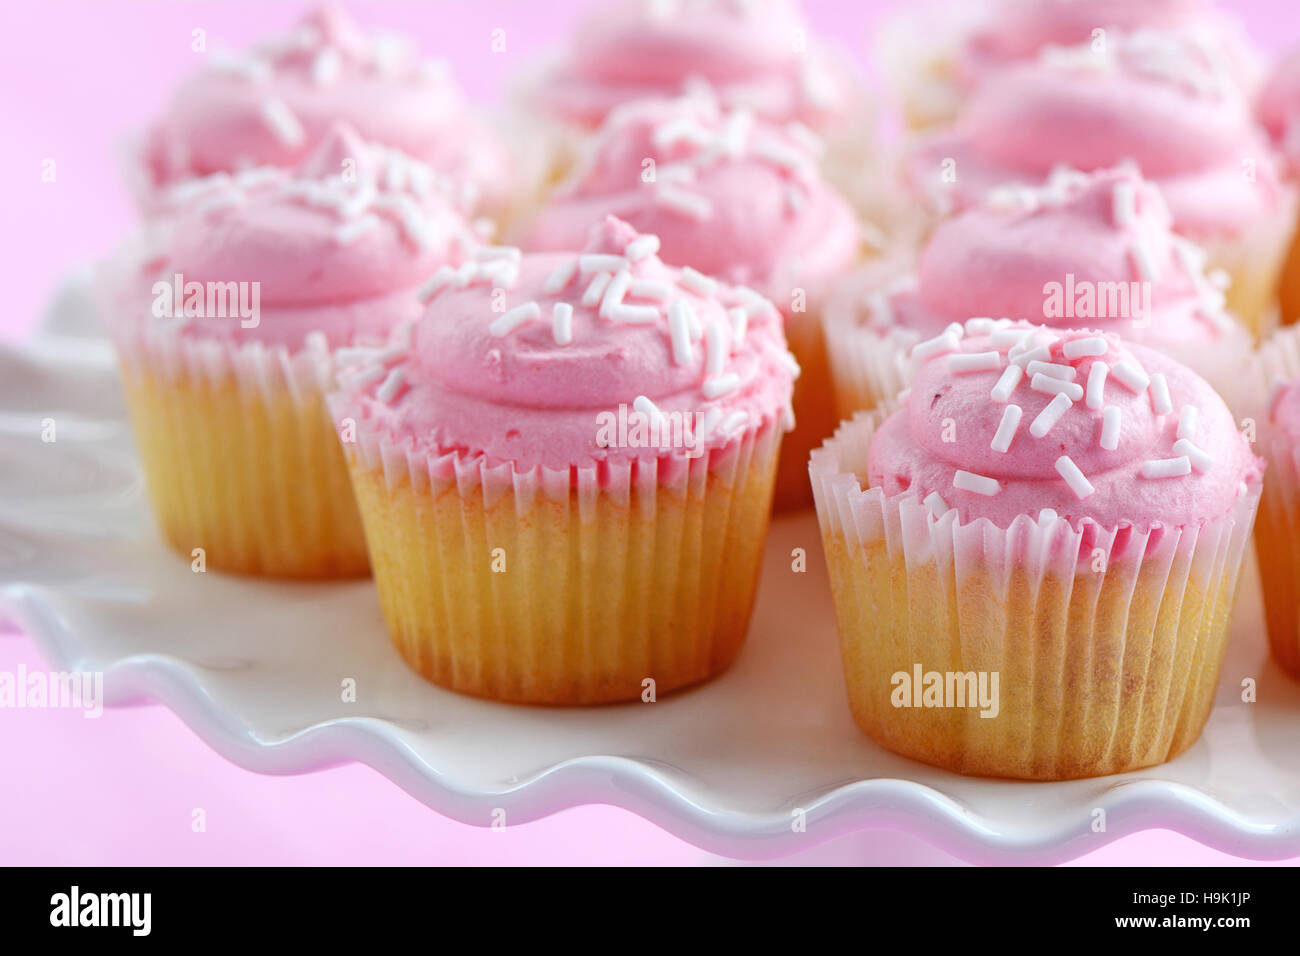 Zarte süße Mini Erdbeer Muffins auf weißen Sockel Kuchen stehen auf rosa Hintergrund im Querformat.  Geringe Schärfentiefe. Stockfoto